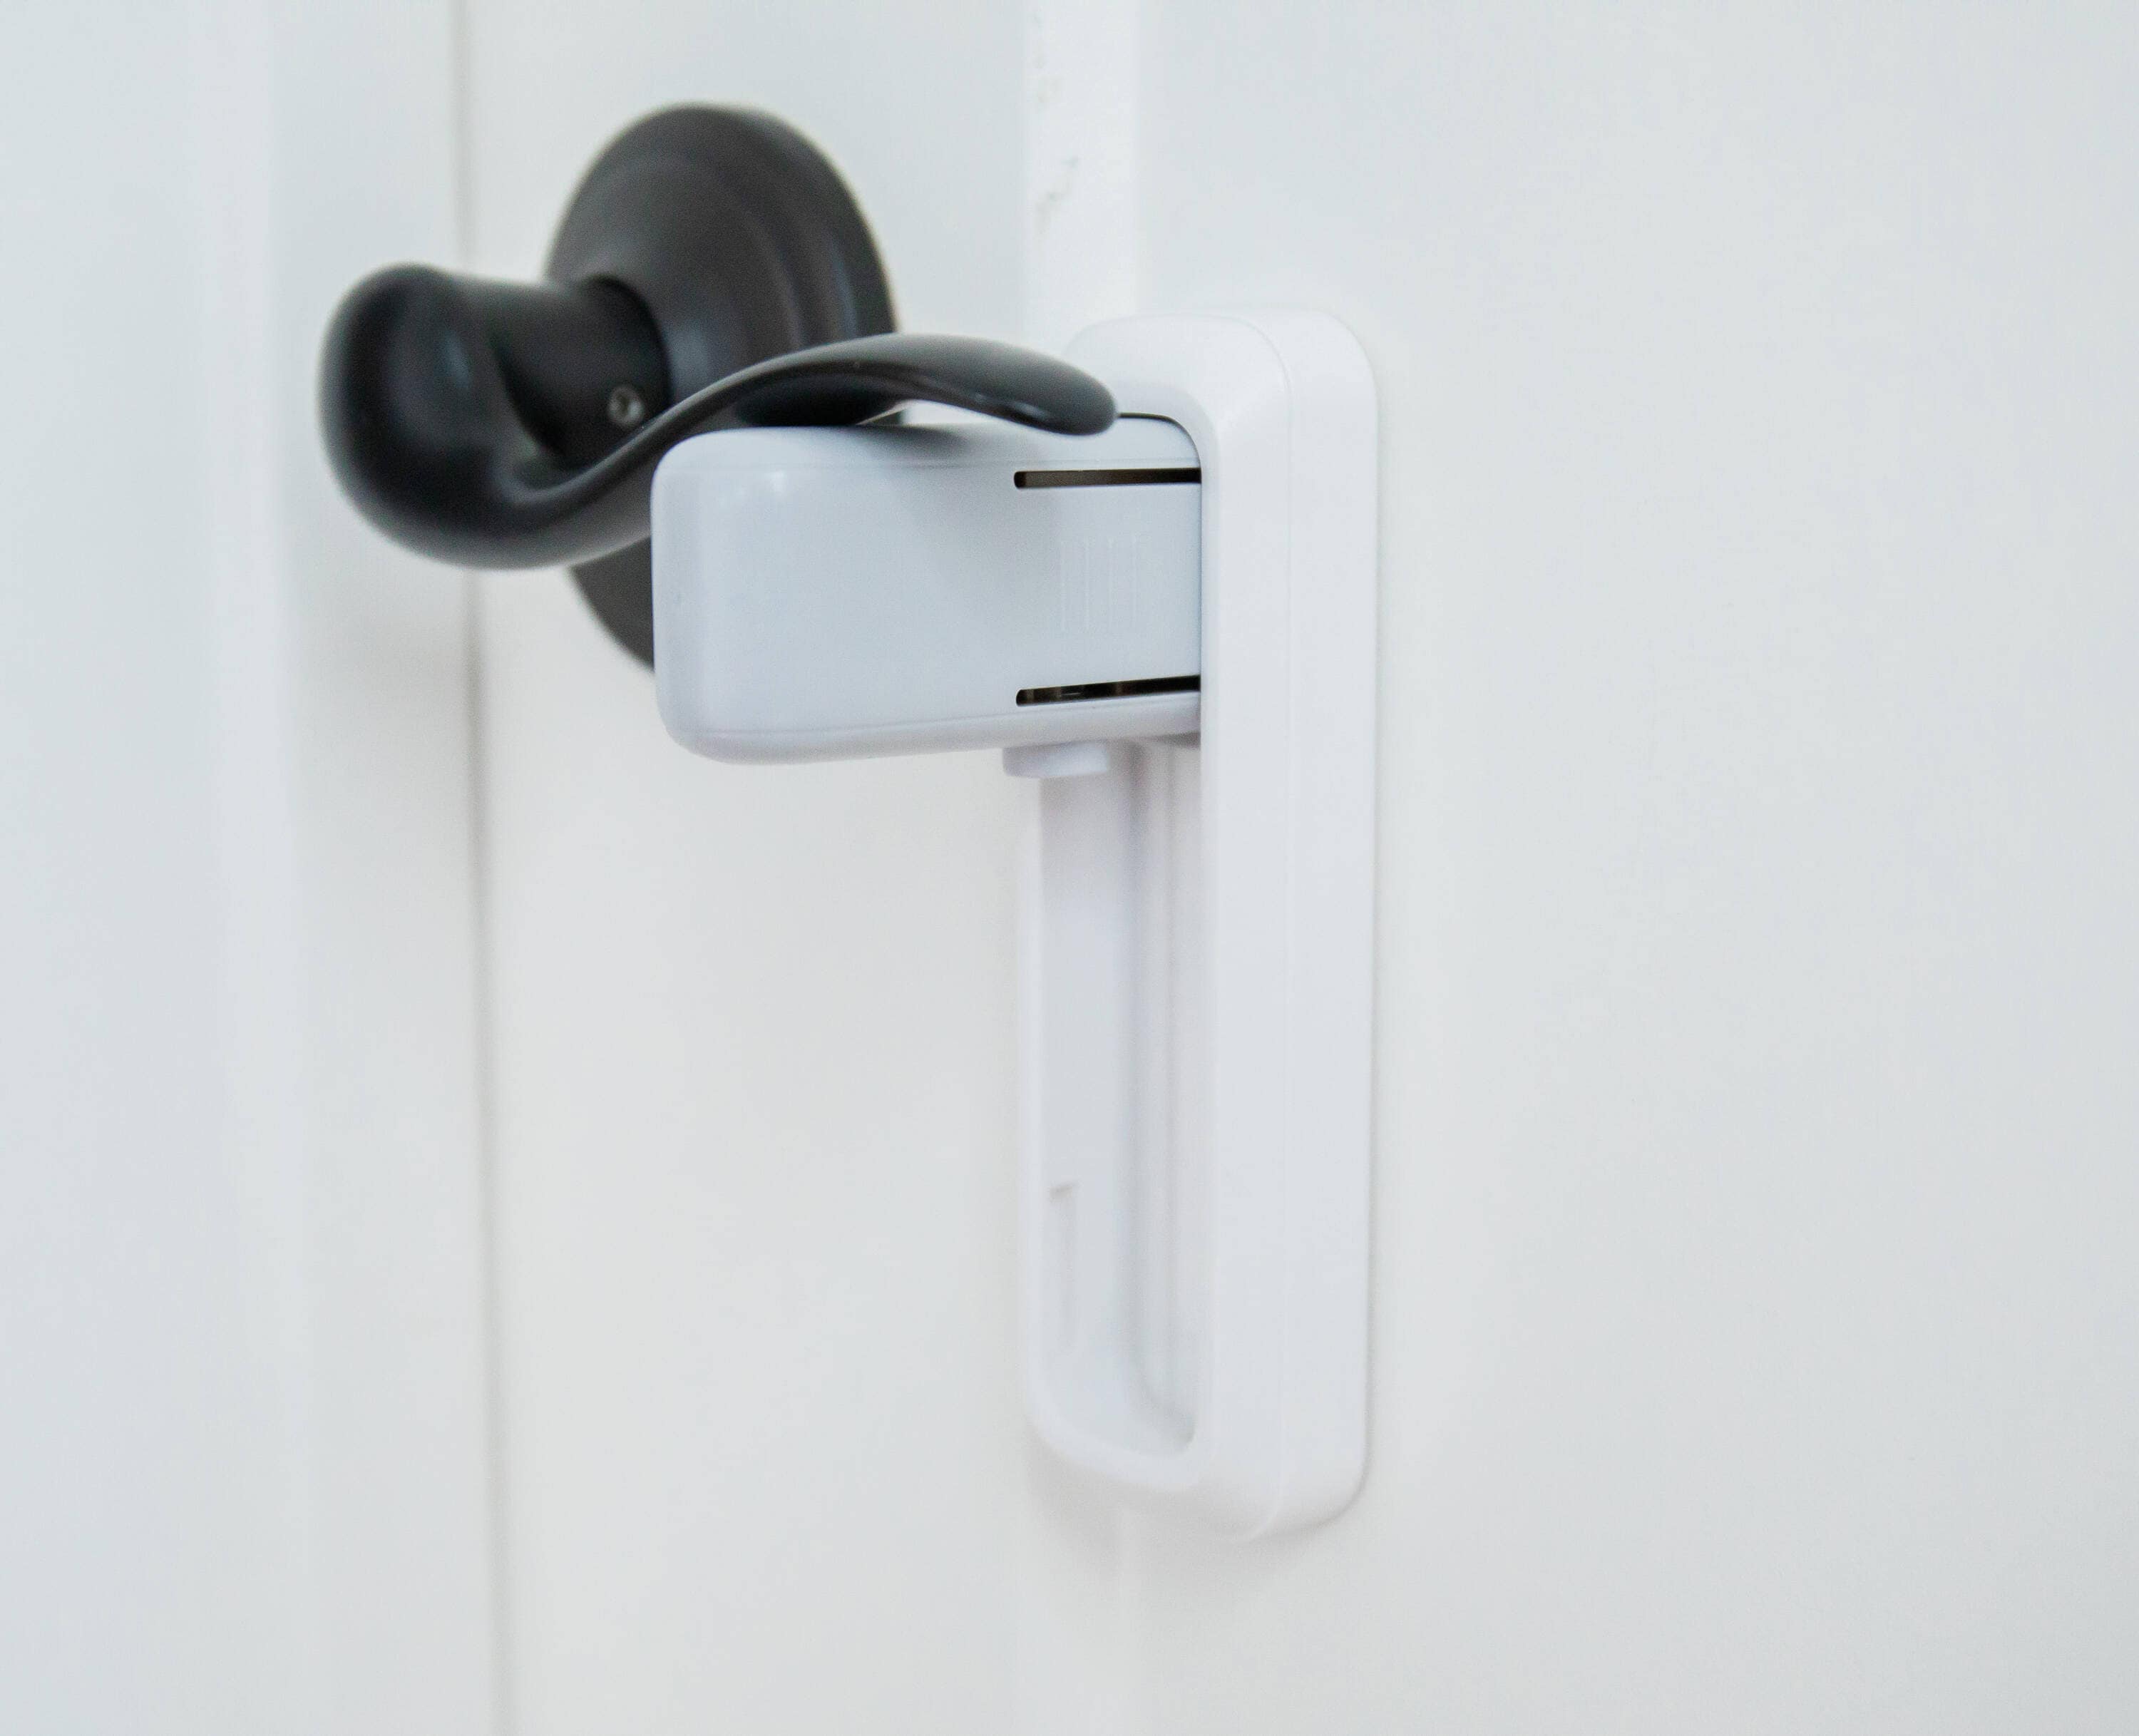 DOOR MONKEY Door Lock & Pinch Guard - Safety Door Lock For Kids